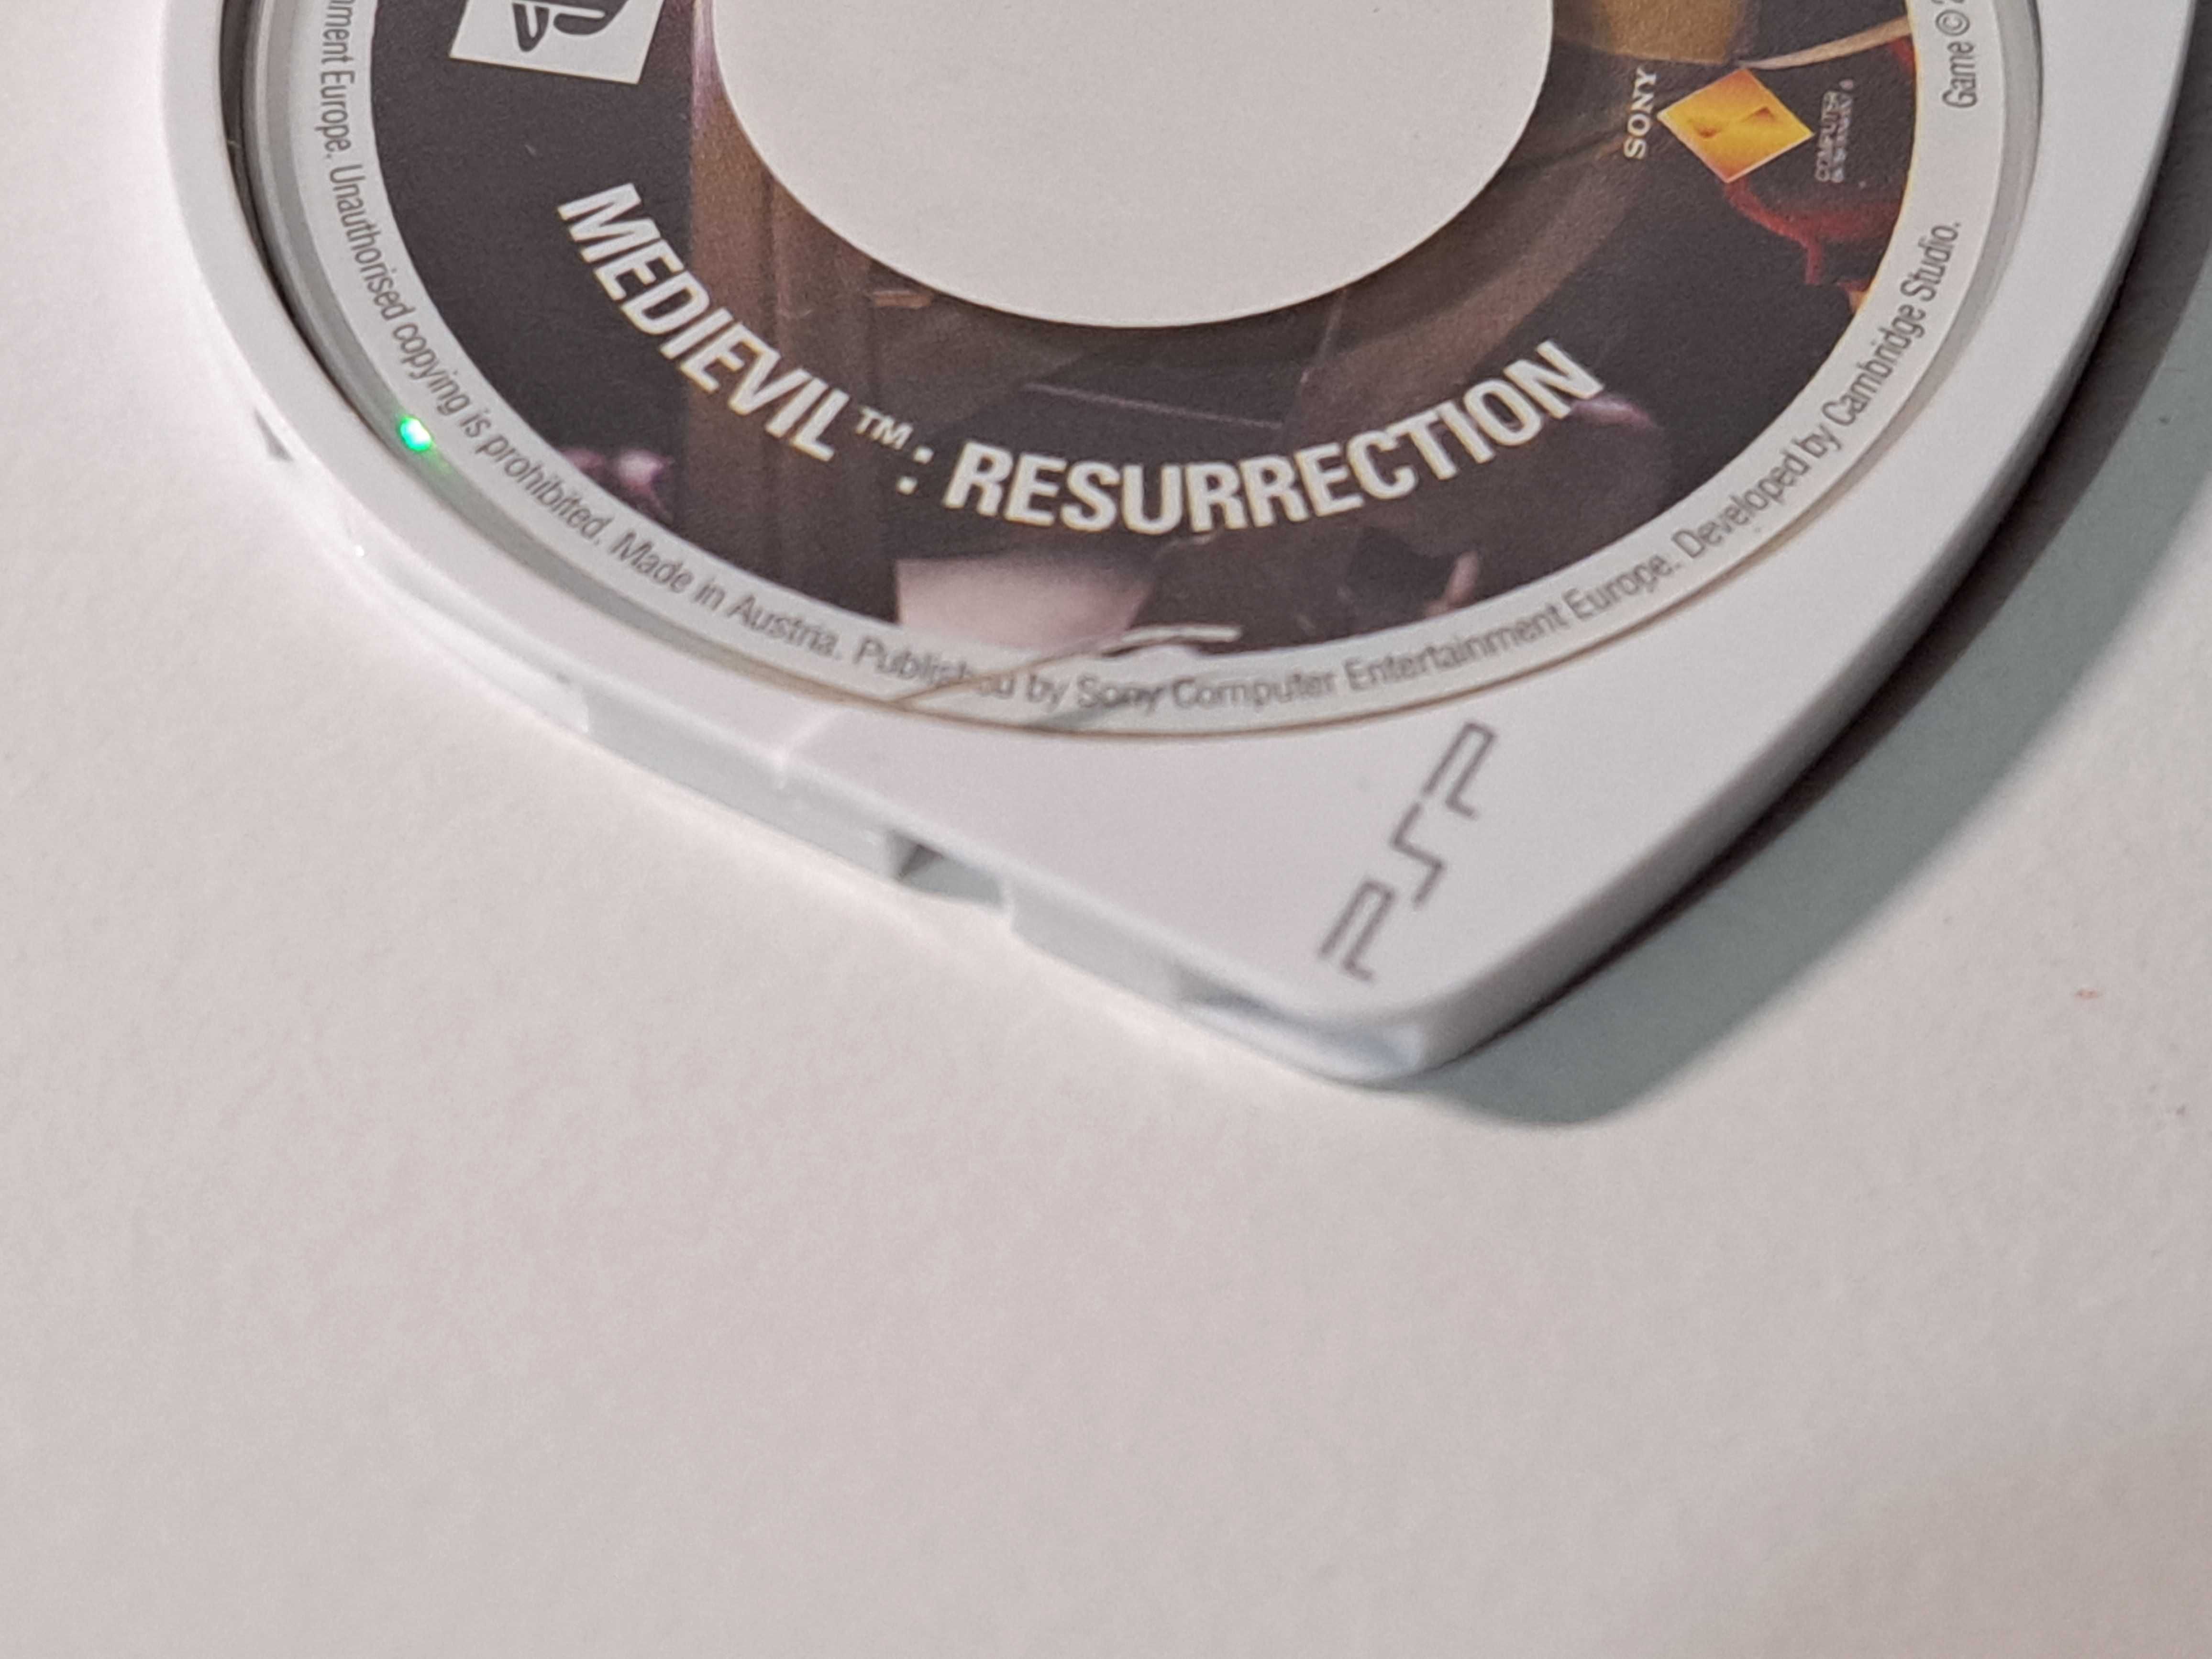 Jogo PSP Medievil Resurrection